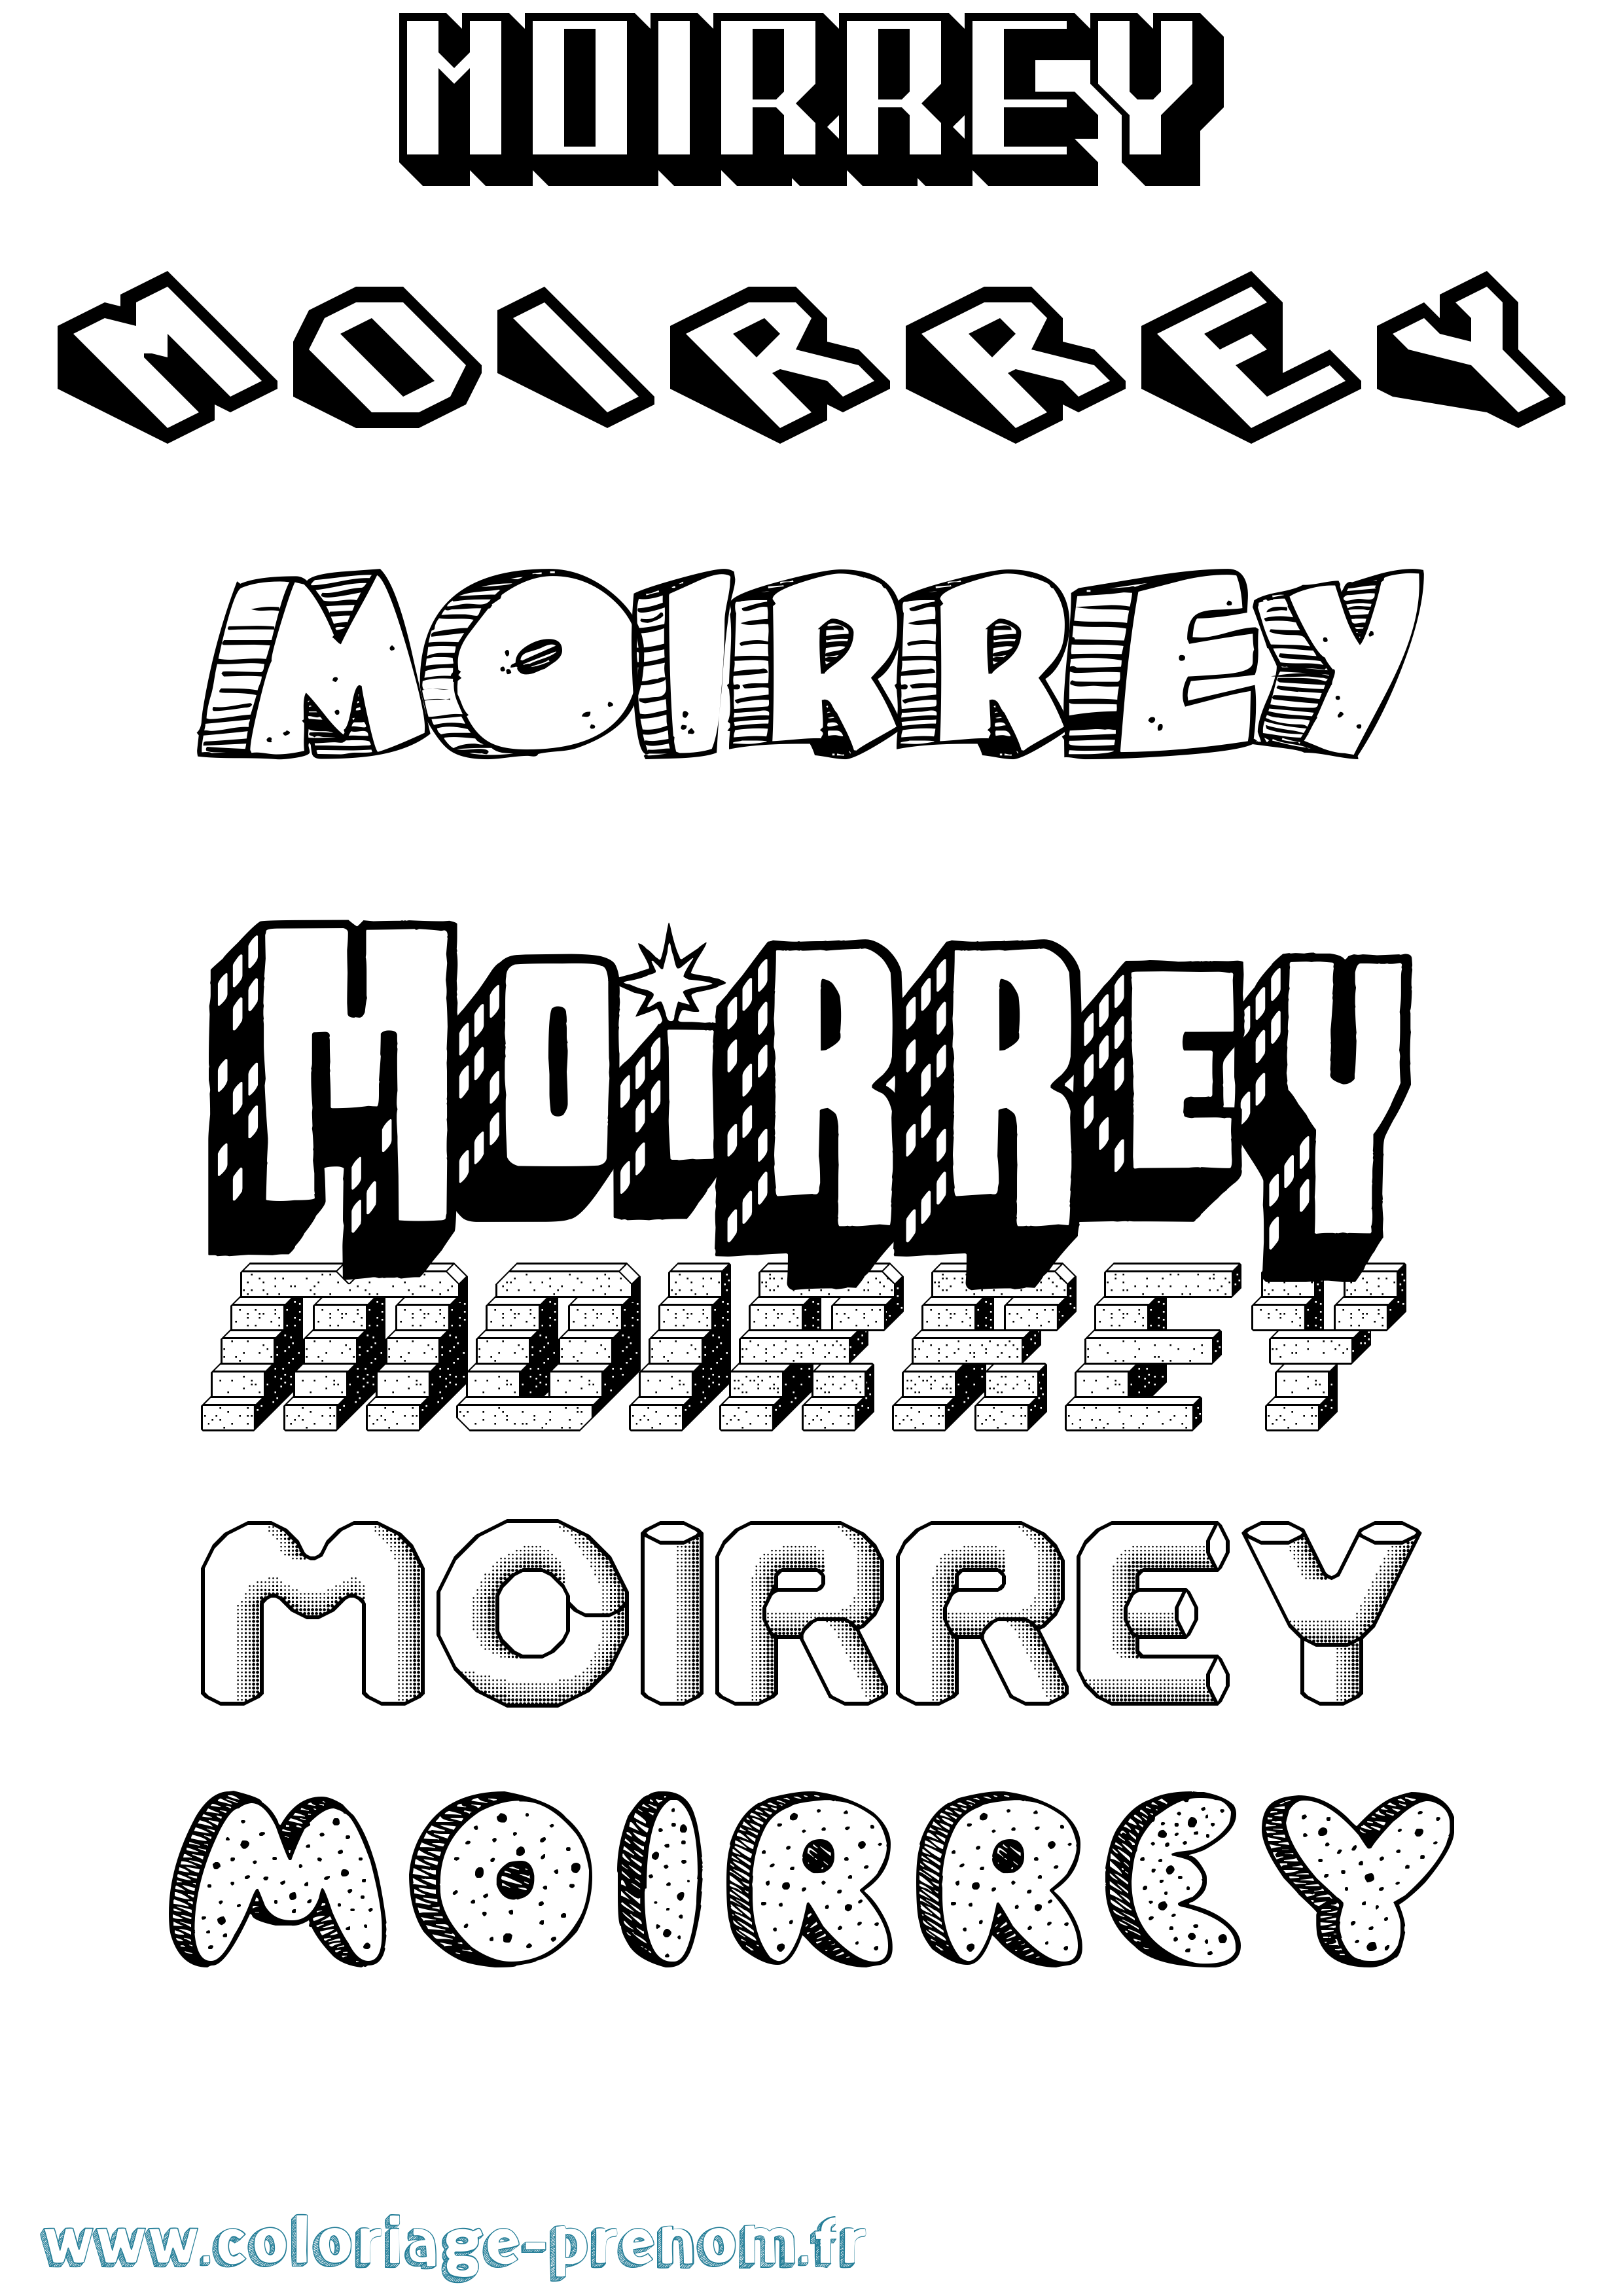 Coloriage prénom Moirrey Effet 3D